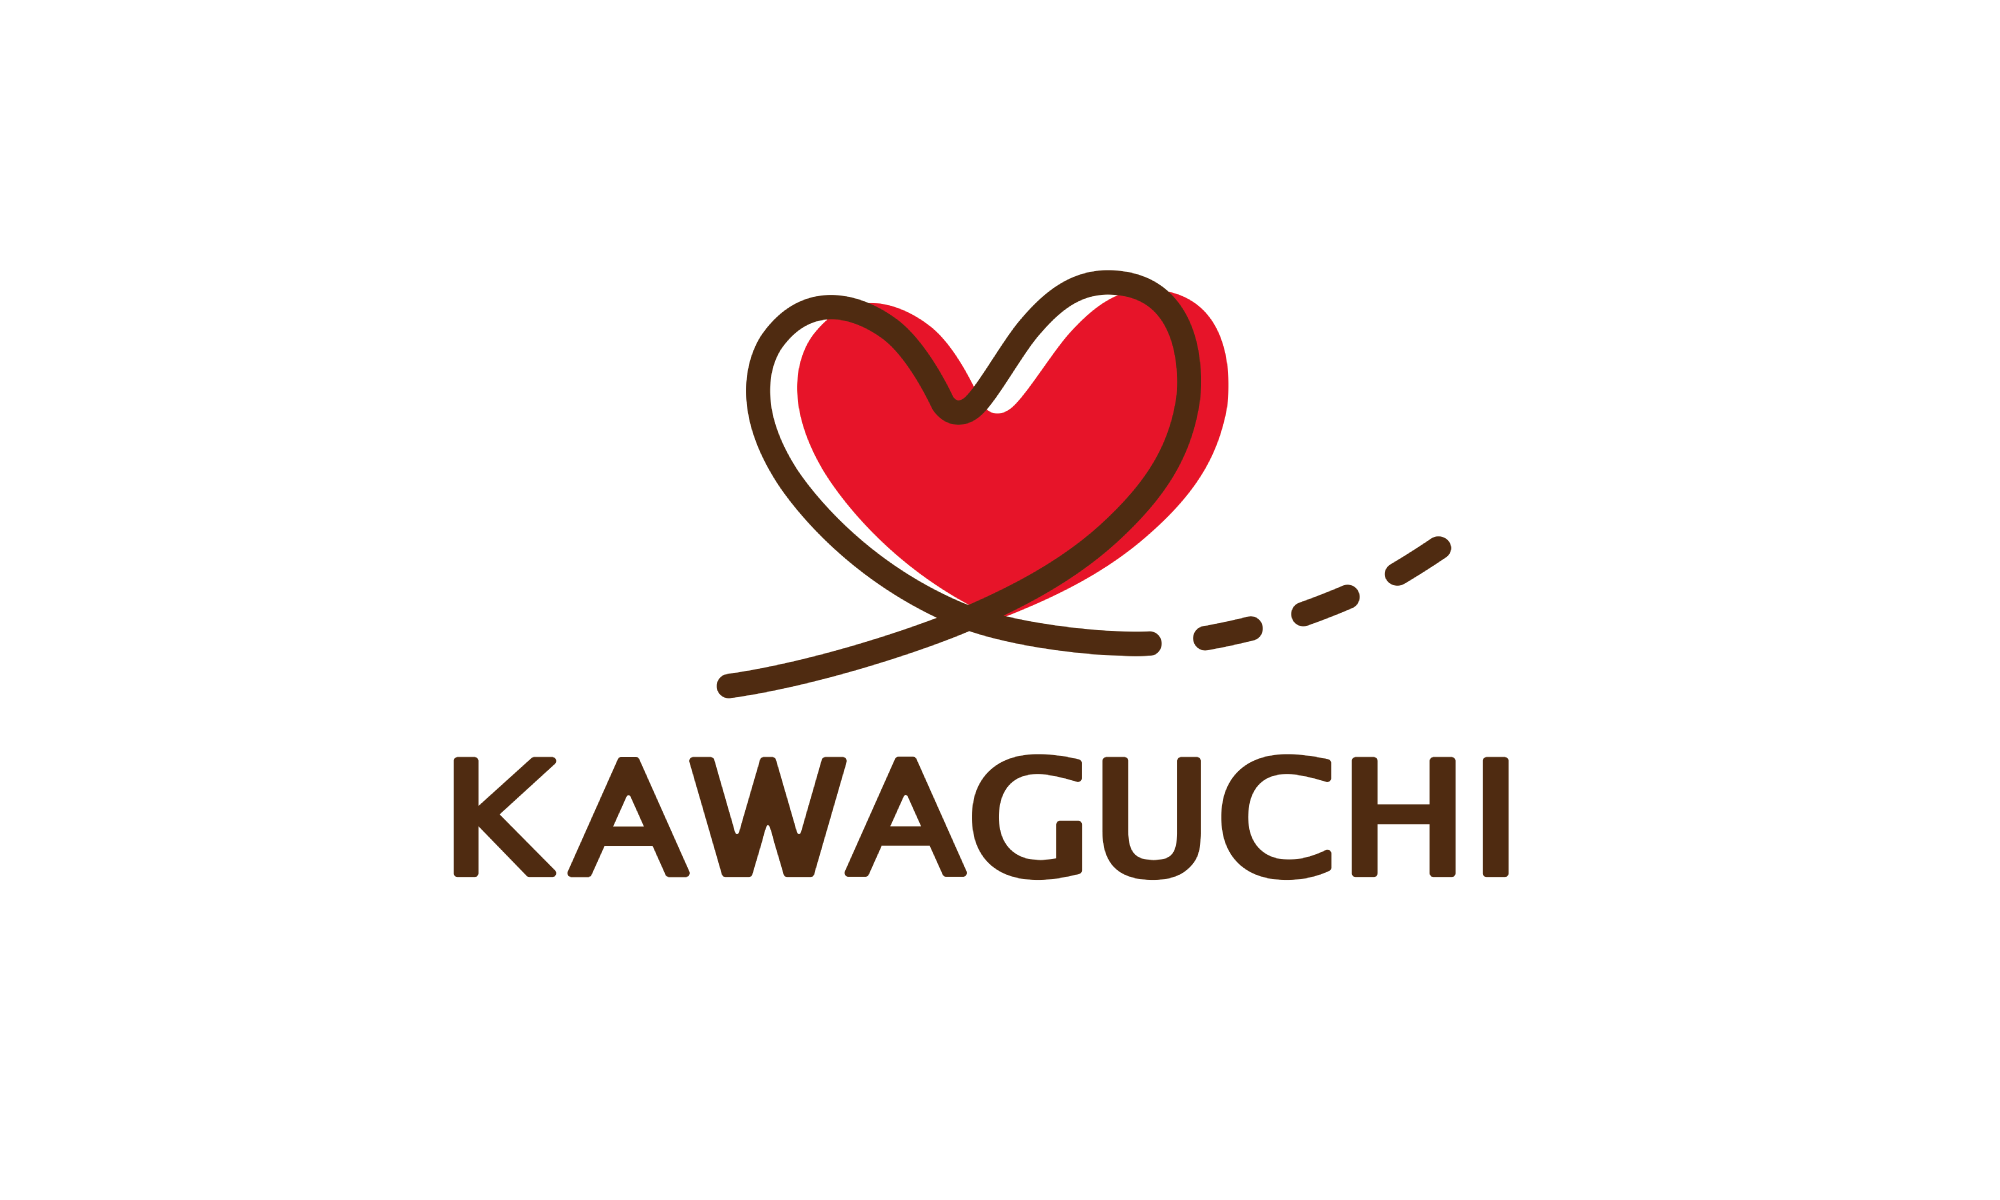 MA（マーケティングオートメーション）によるメール配信で、引き合い増加と共に顧客との関係性向上につながった | 株式会社KAWAGUCHI